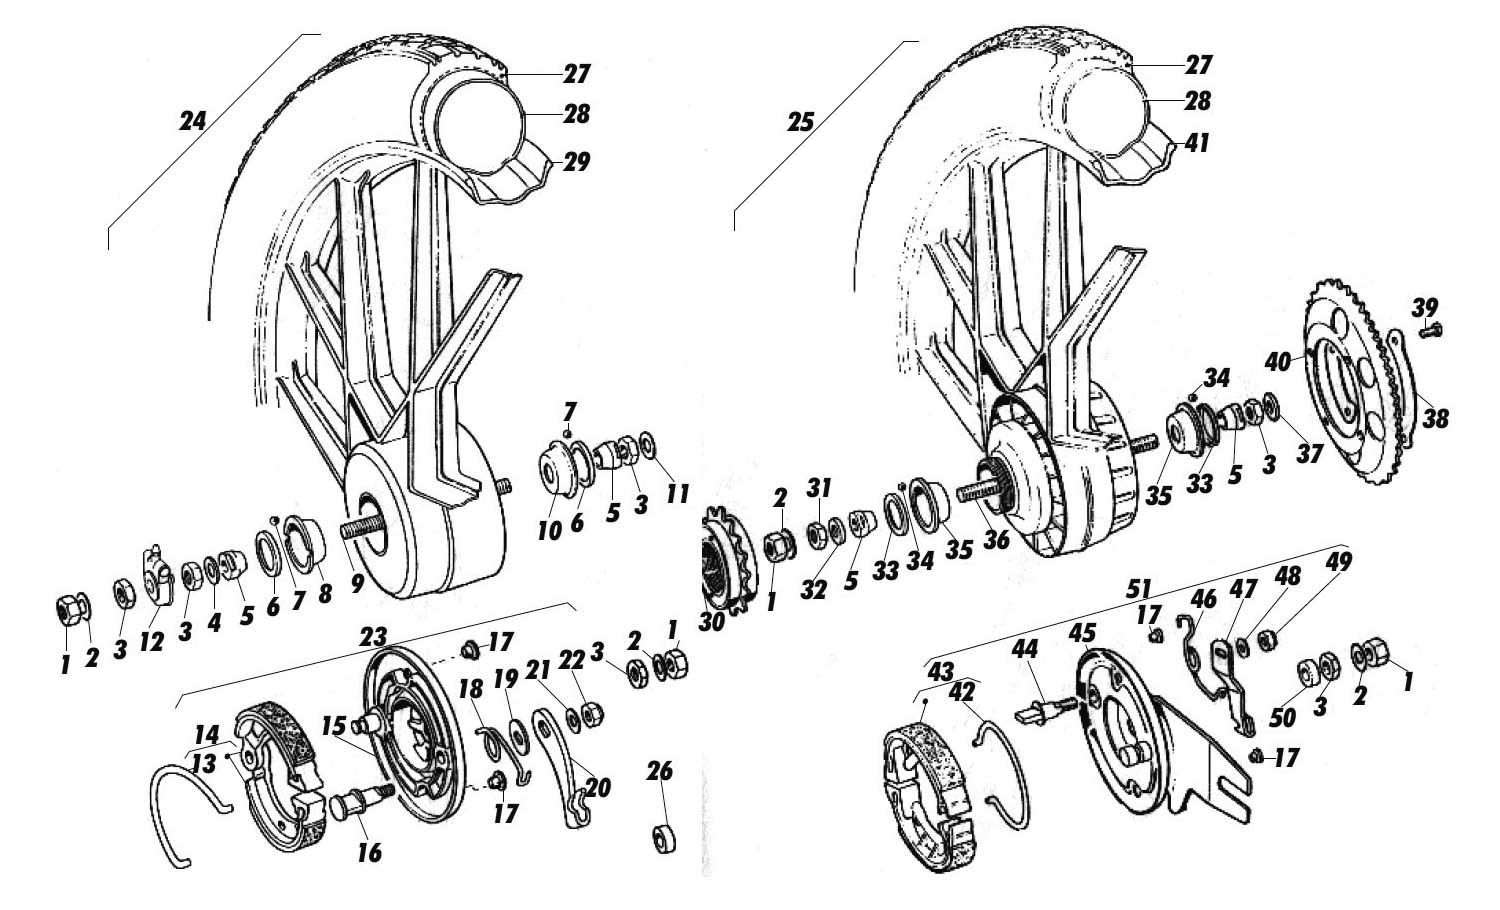 Puch Maxi monza racing ciclomotor ciclomotor mokick universal bum espejo abrazadera aproximadamente * 